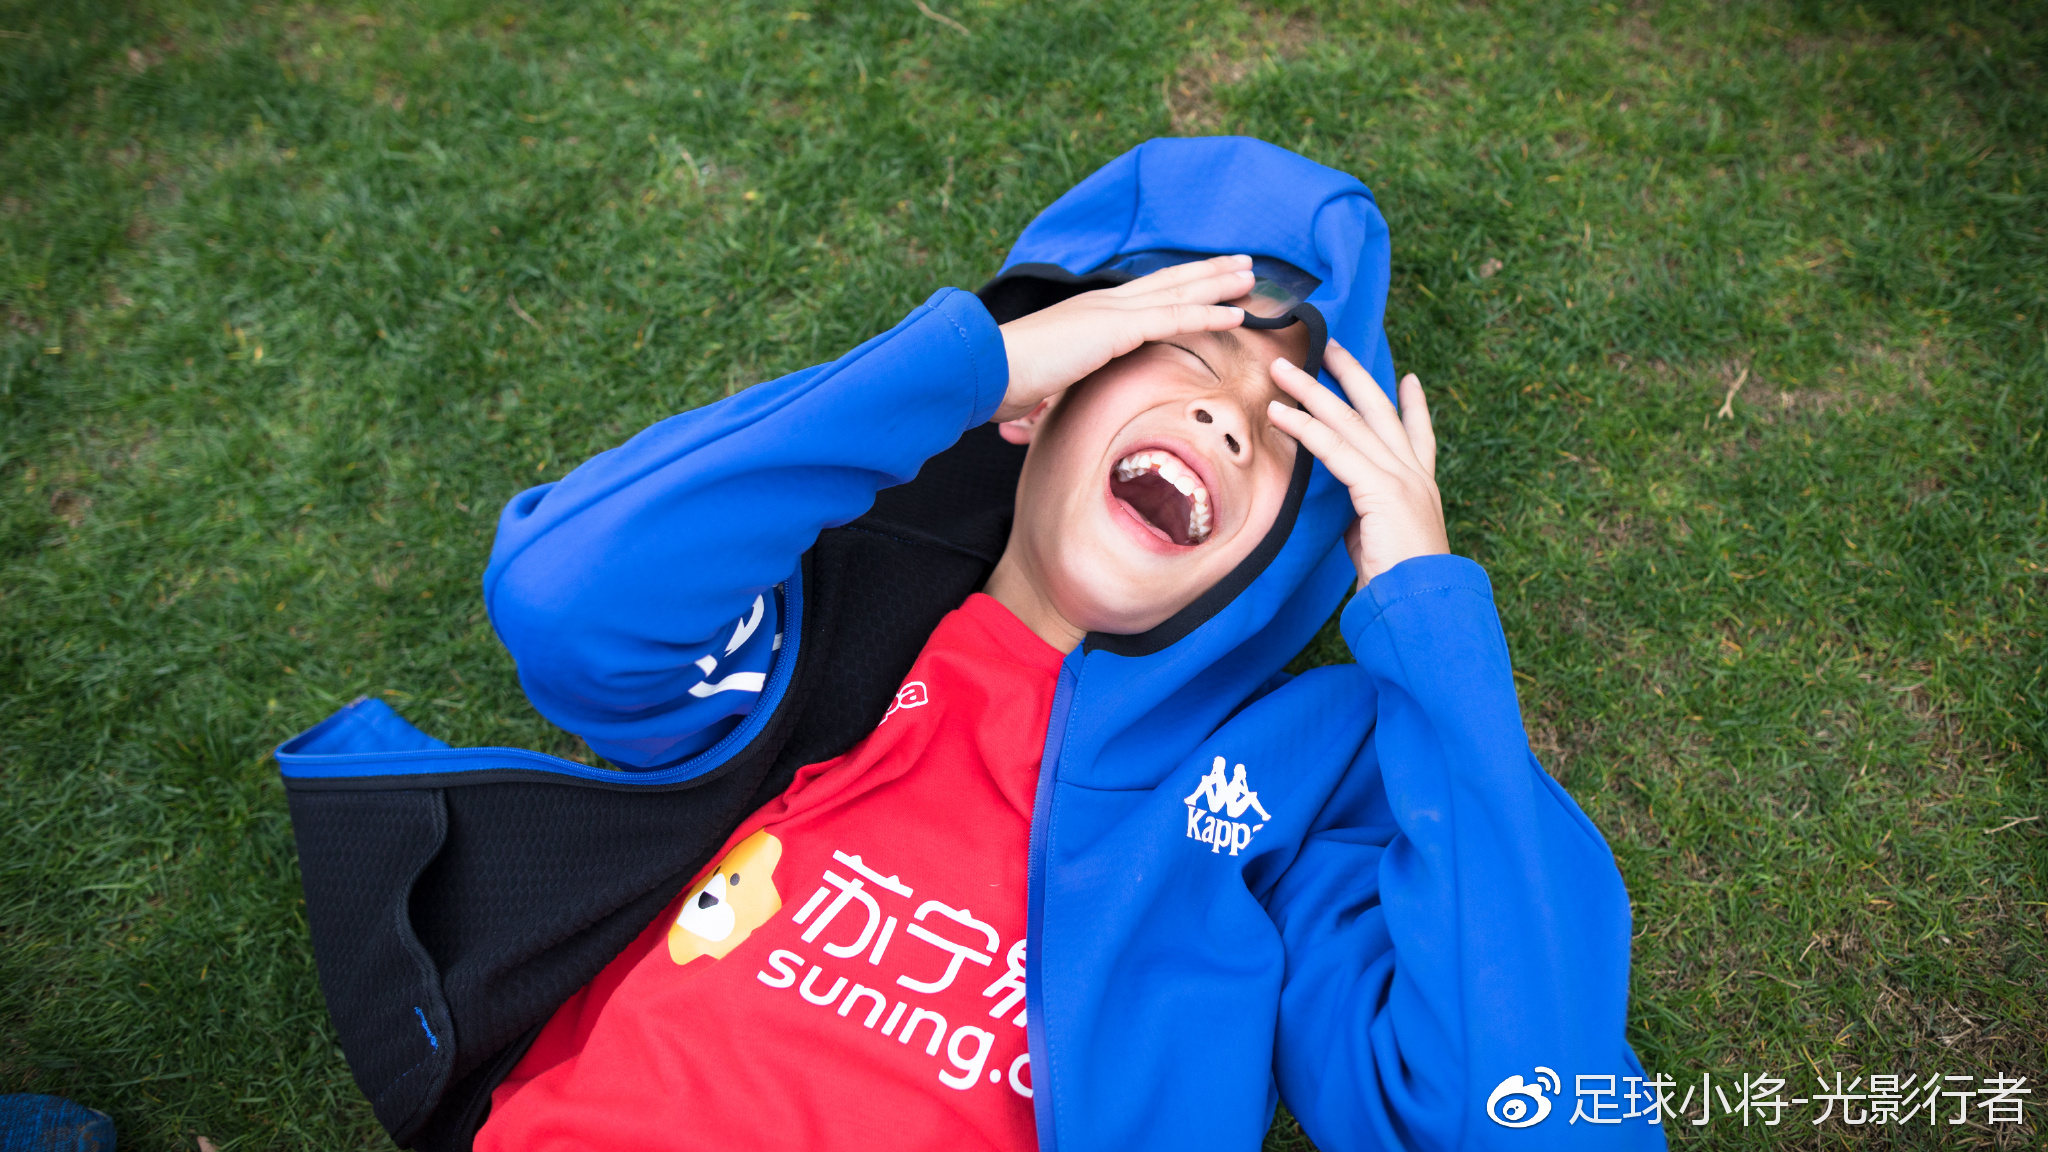 【决赛】中国足球小将 VS 南京鼓楼一中心小学